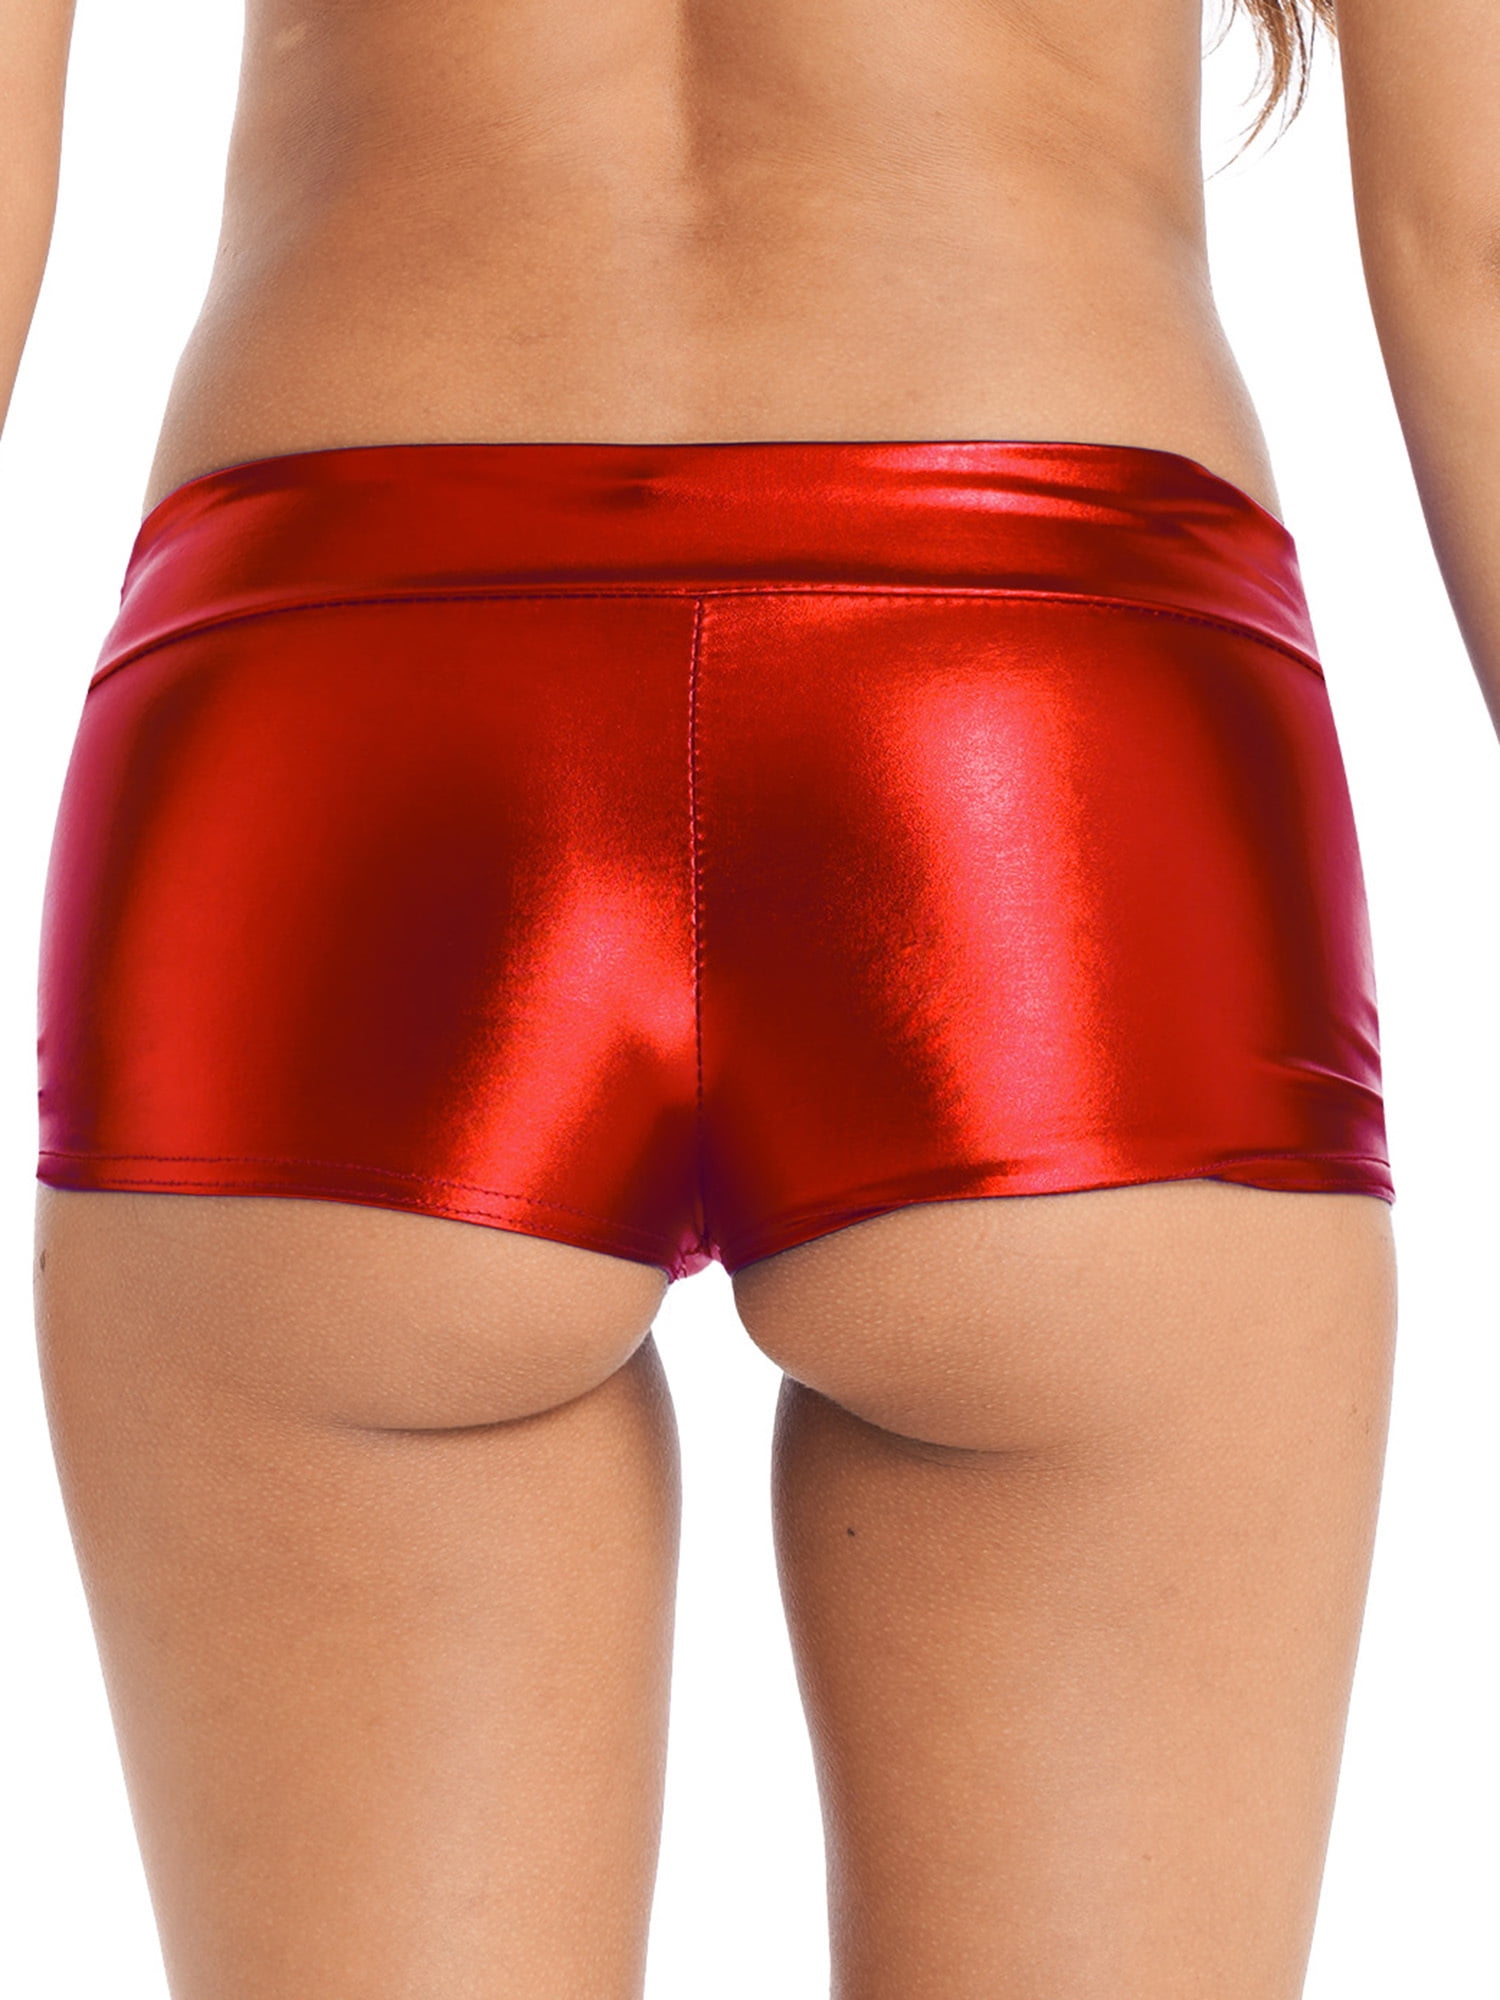 YEAHDOR Womens Metallic Shiny Booty Shorts Low Rise Push Up Shorts